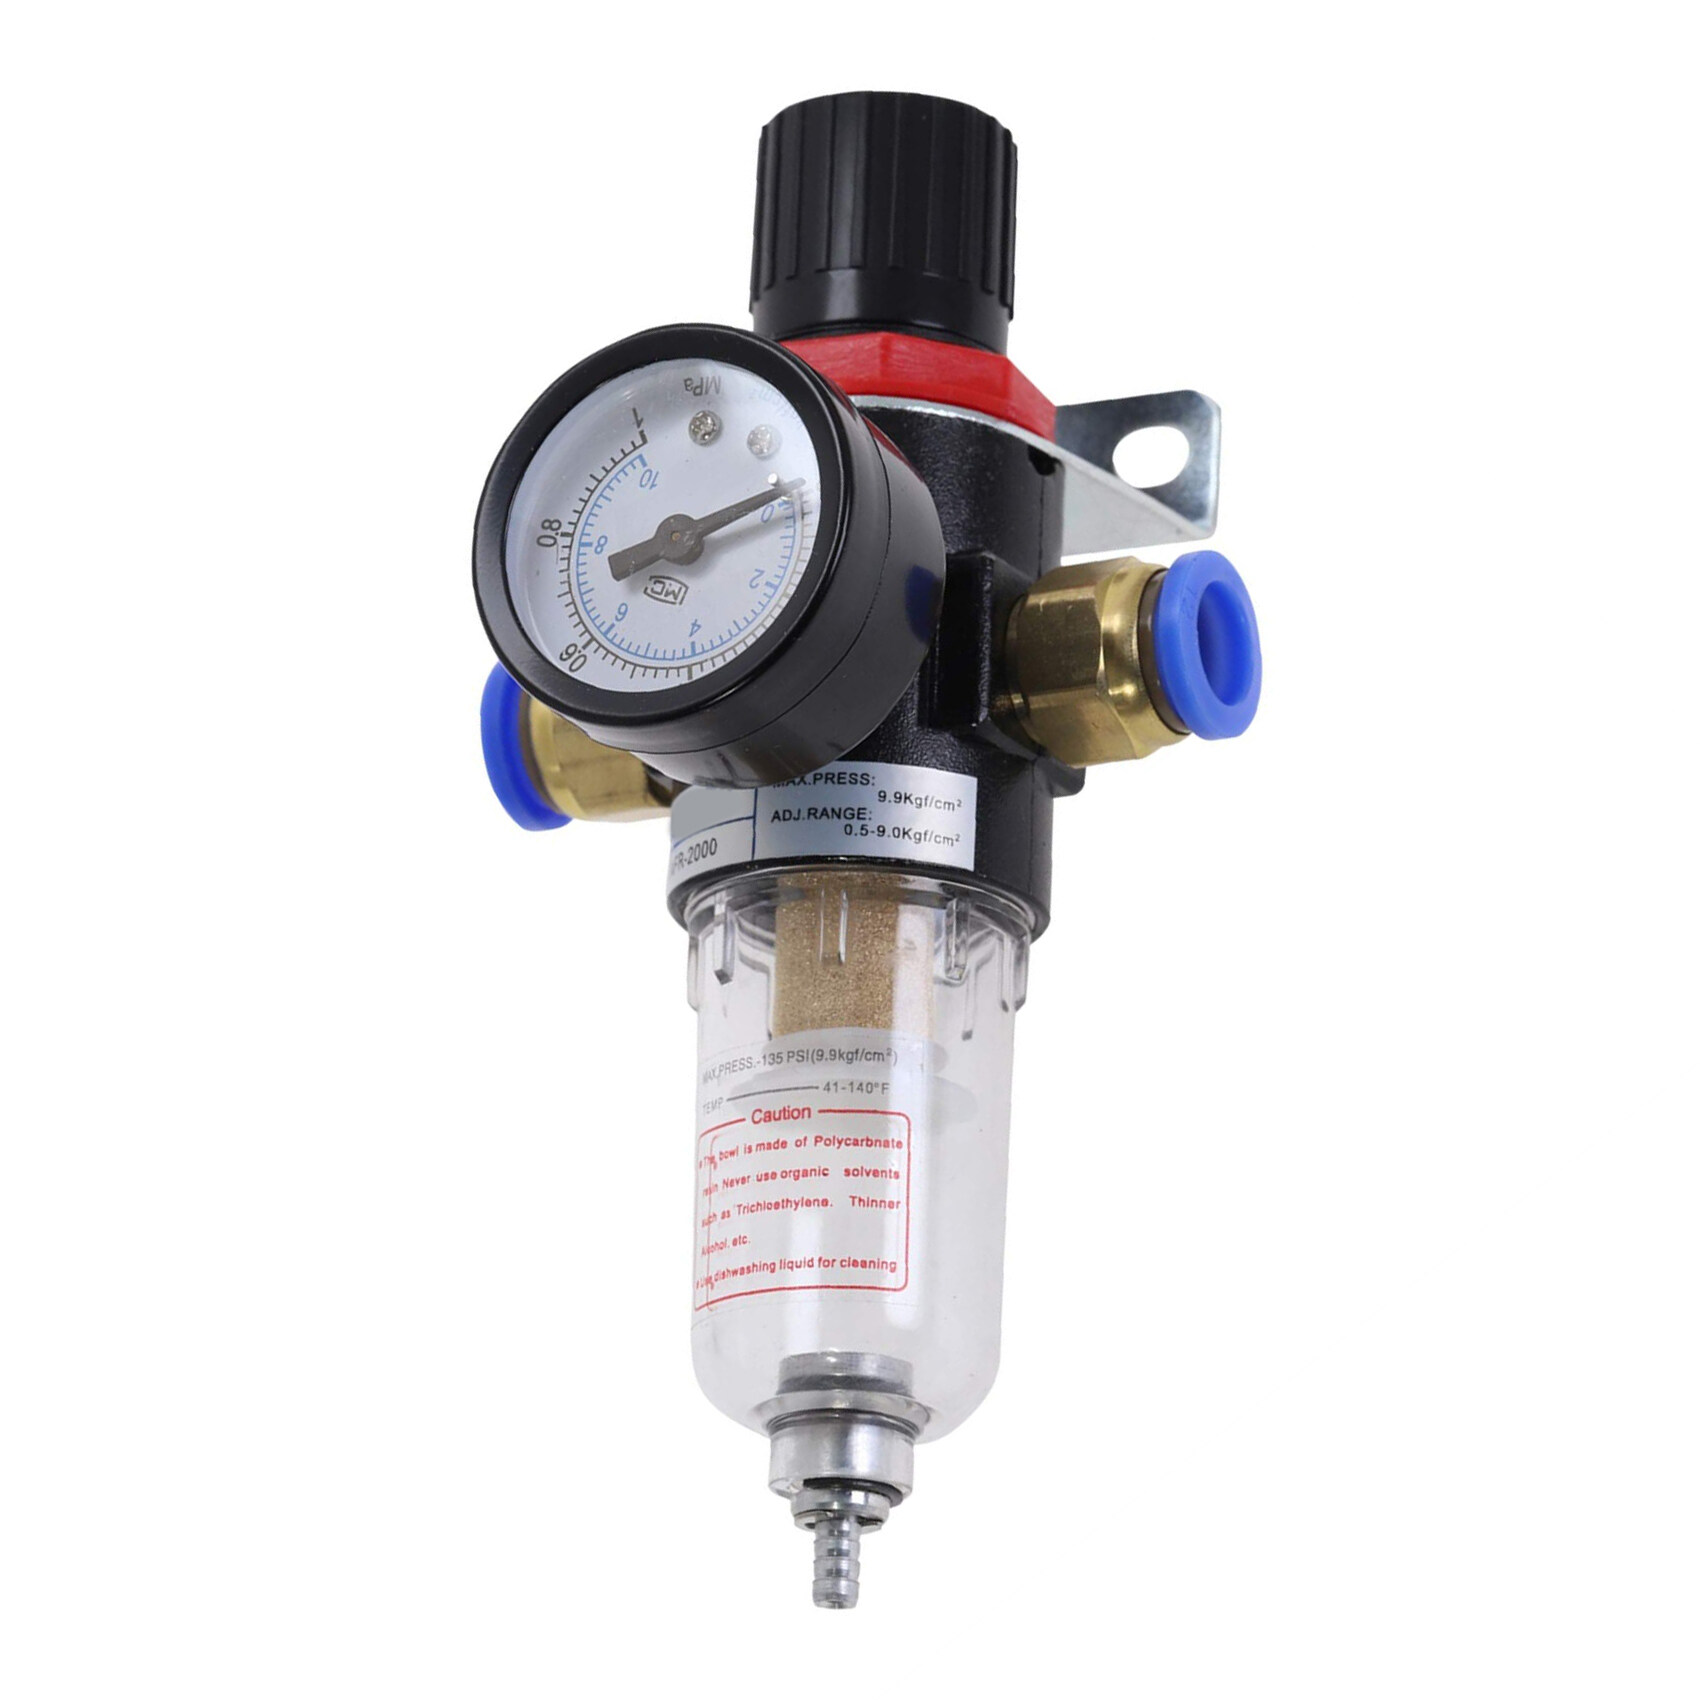 Air Pressure Regulator Oil/Water Separator Trap Filter Airbrush Compressor New 